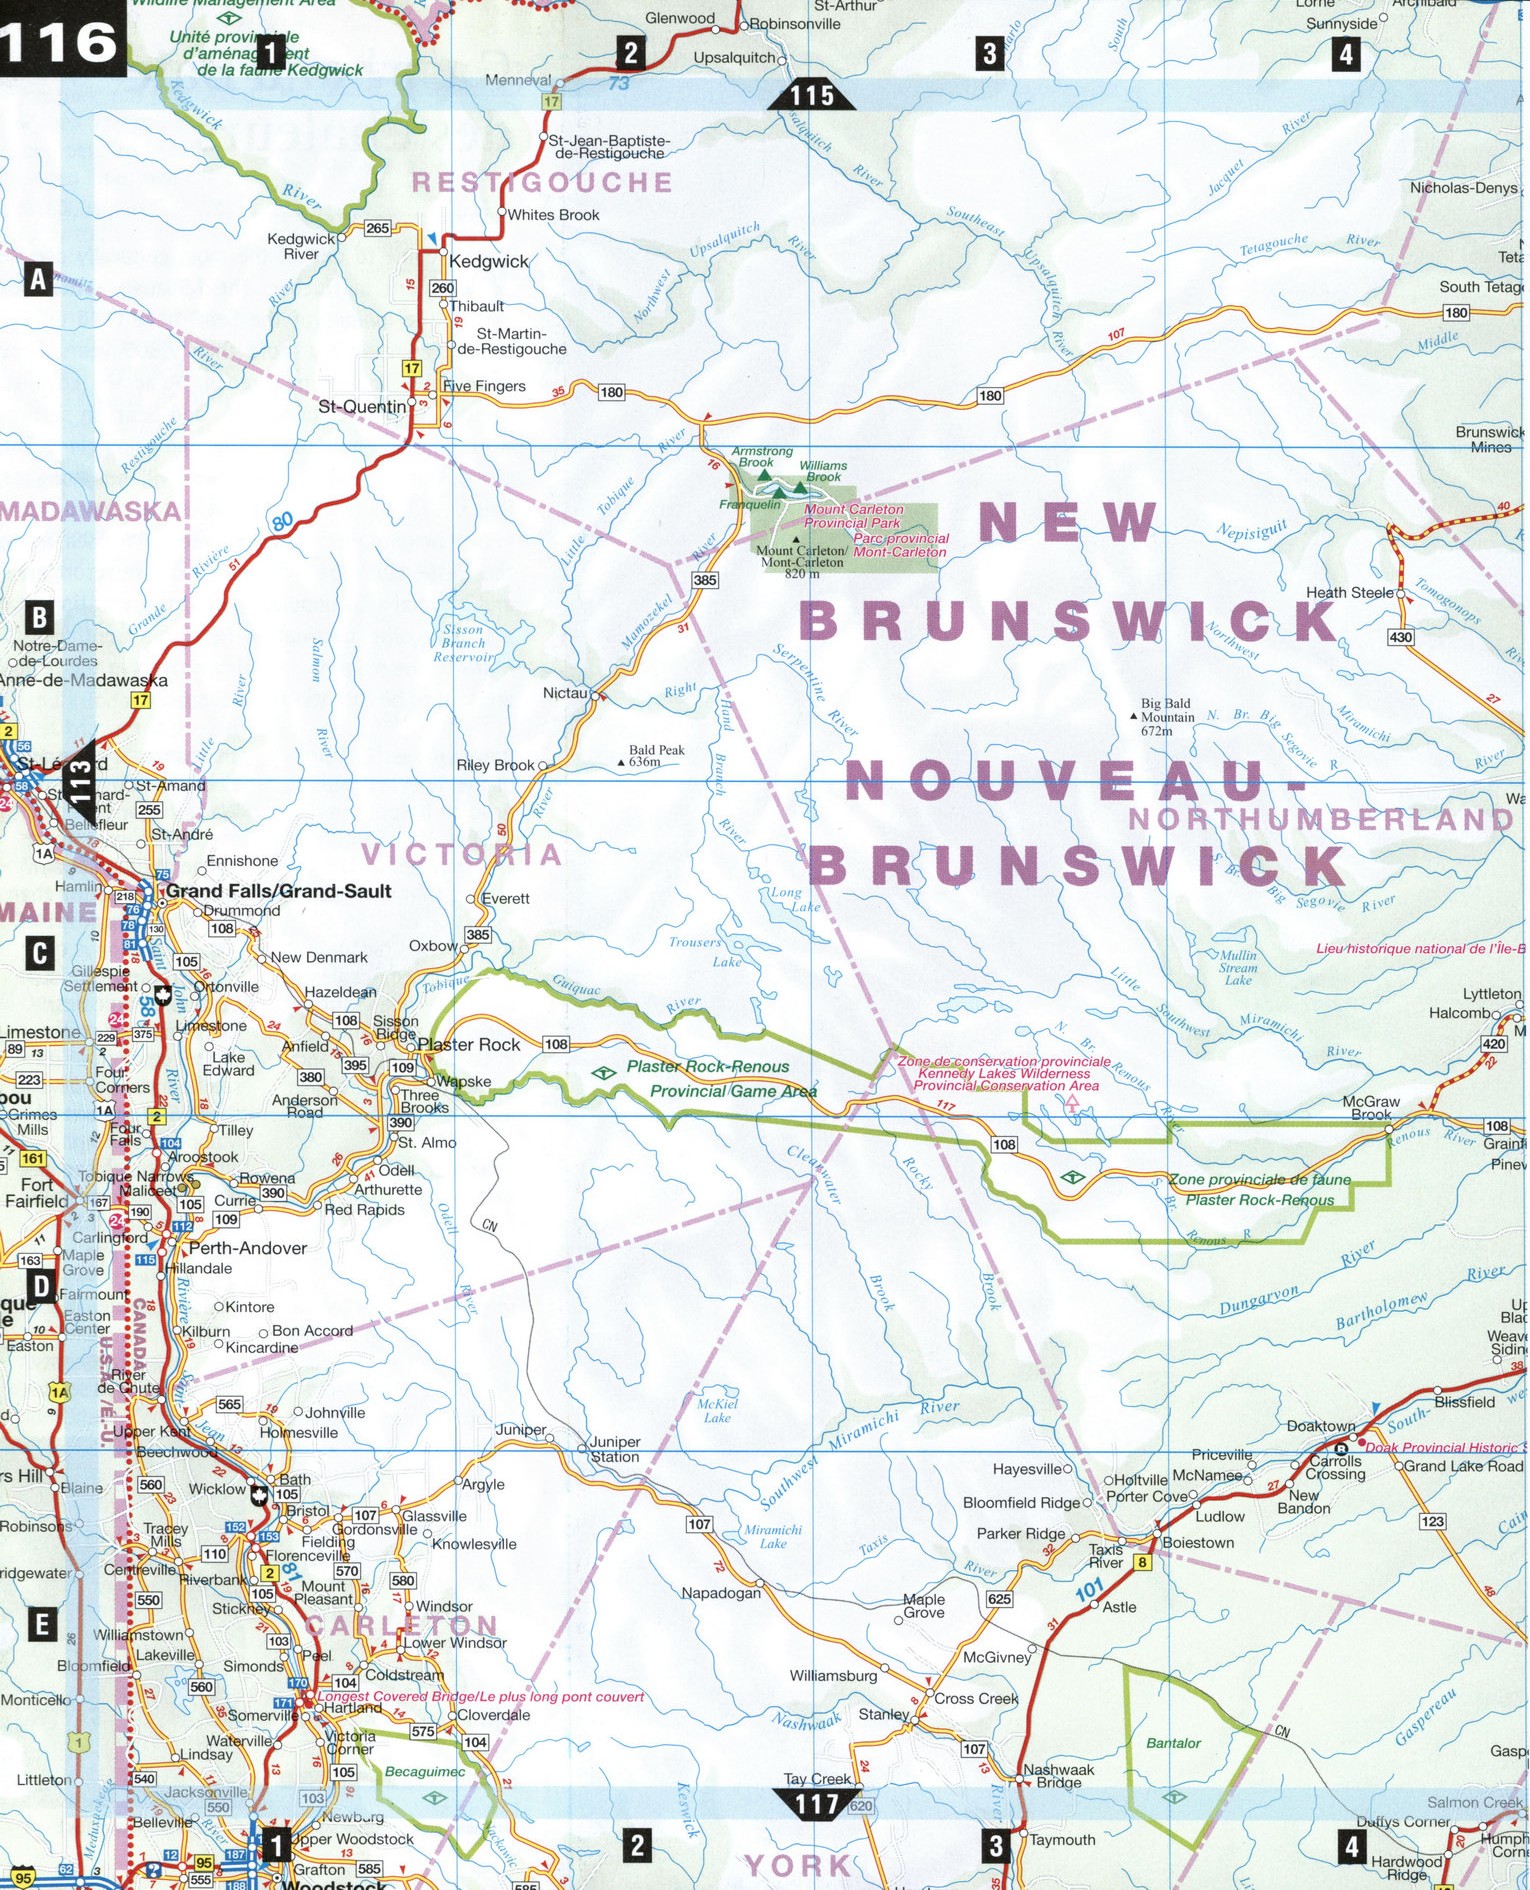 Map of Northern New Brunswick